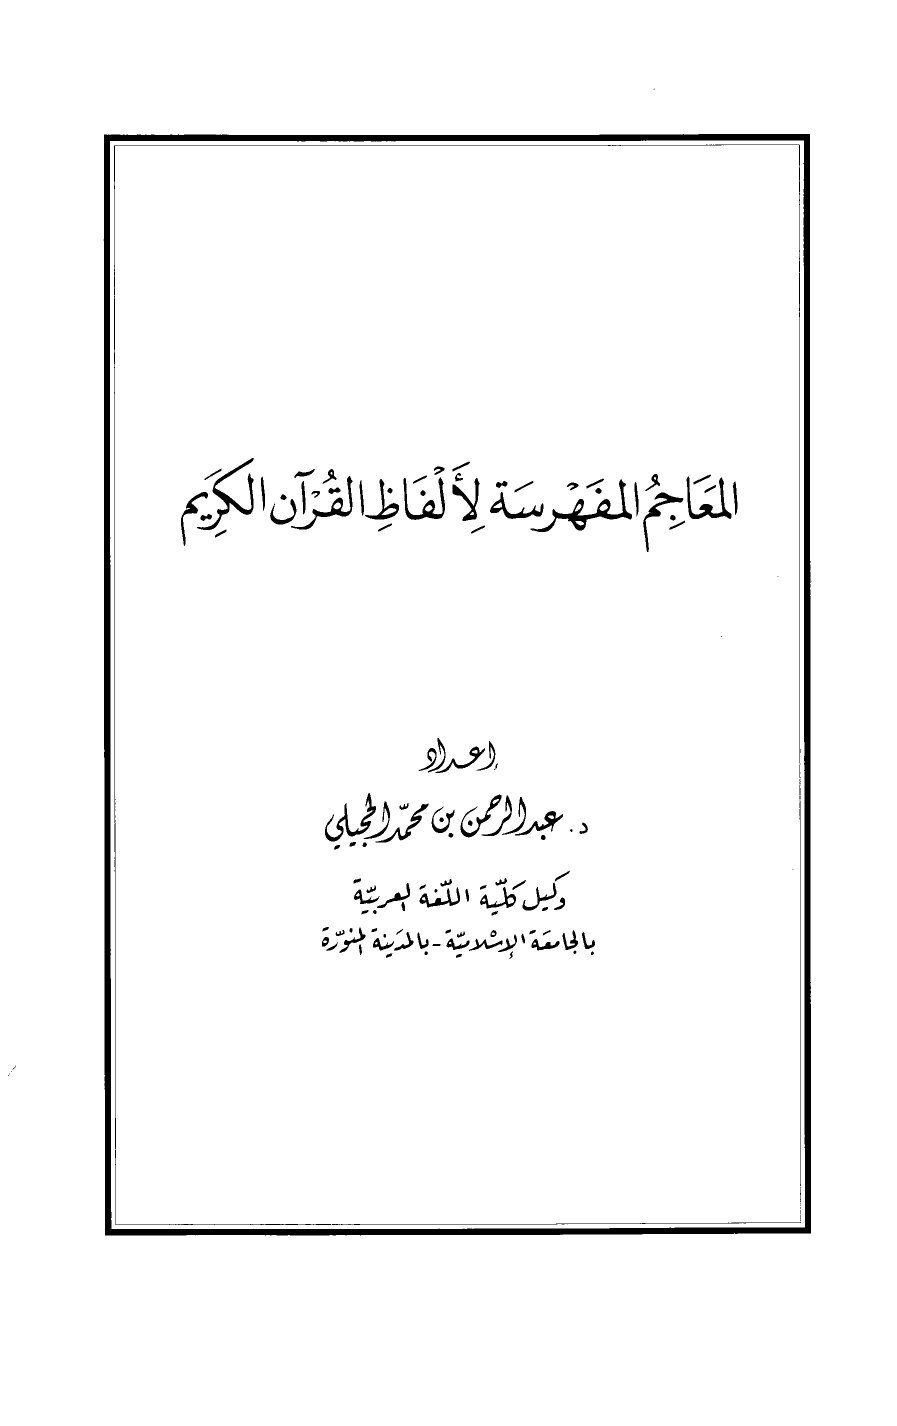 تنزيل وتحميل كتاِب المعاجم المفهرسة لألفاظ القرآن الكريم pdf برابط مباشر مجاناً